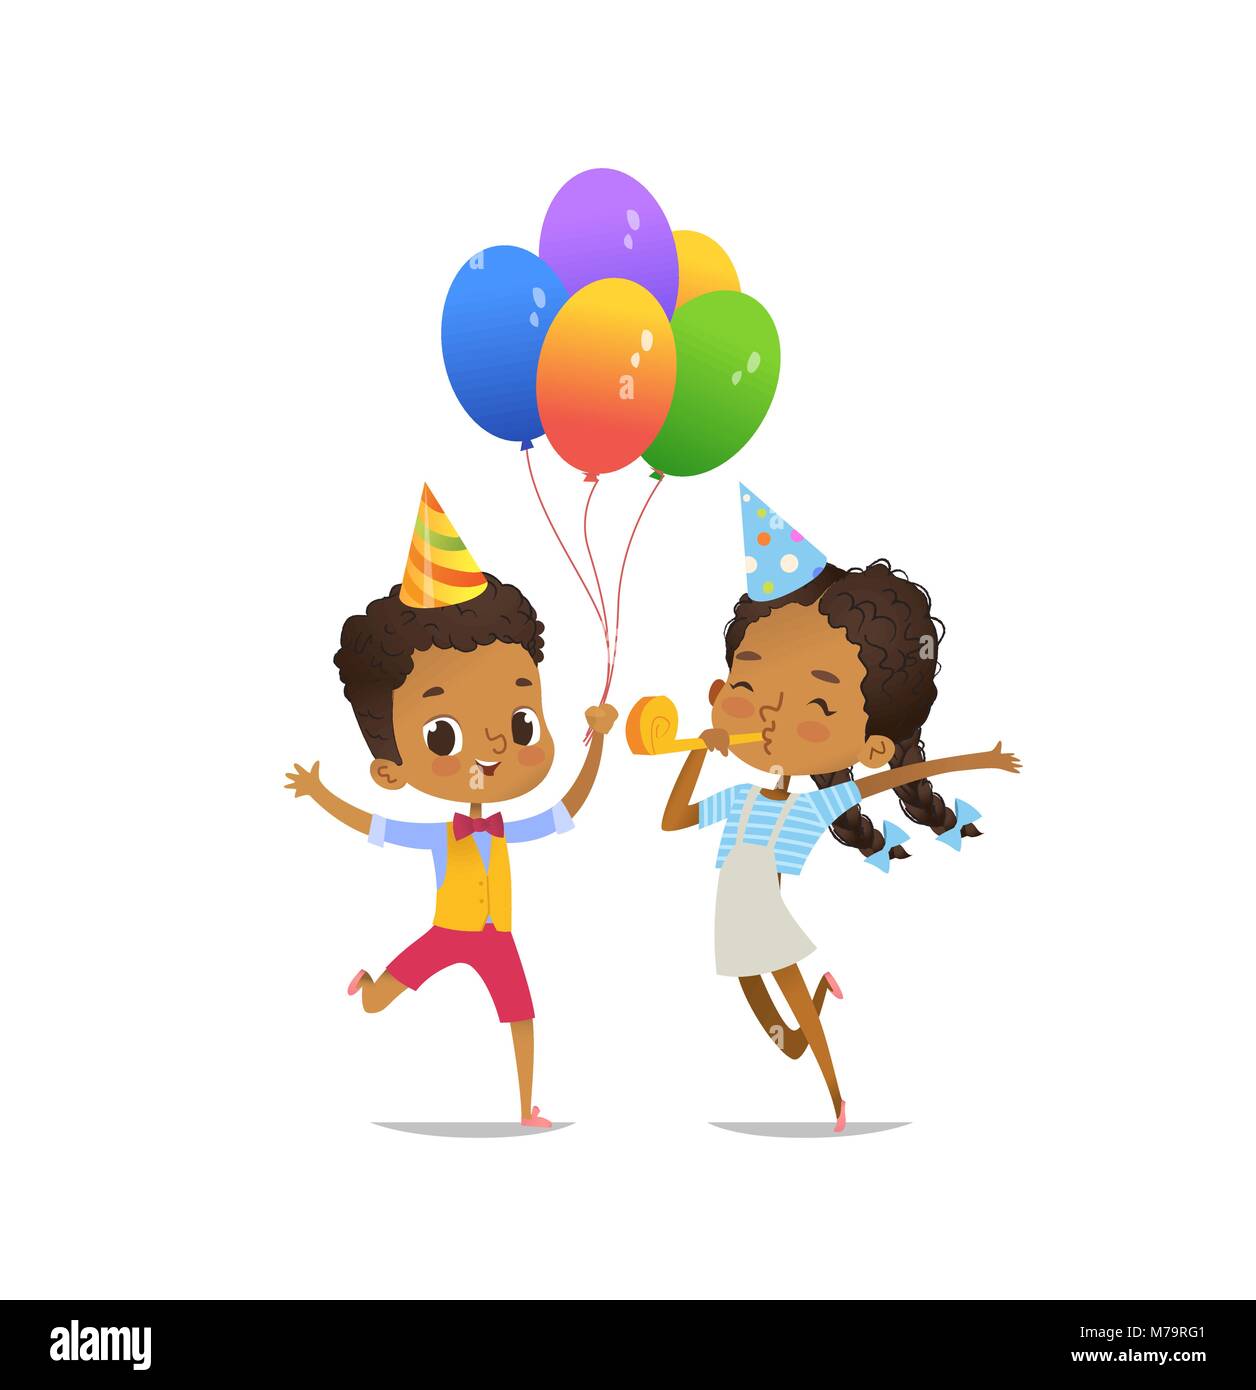 Felice afro-americano di bambini con i palloncini e compleanno hat felicemente saltando su sfondo bianco. Illustrazione Vettoriale per la festa di compleanno flyer, sito web banner, poster, flyer, invito. Isolato. Illustrazione Vettoriale